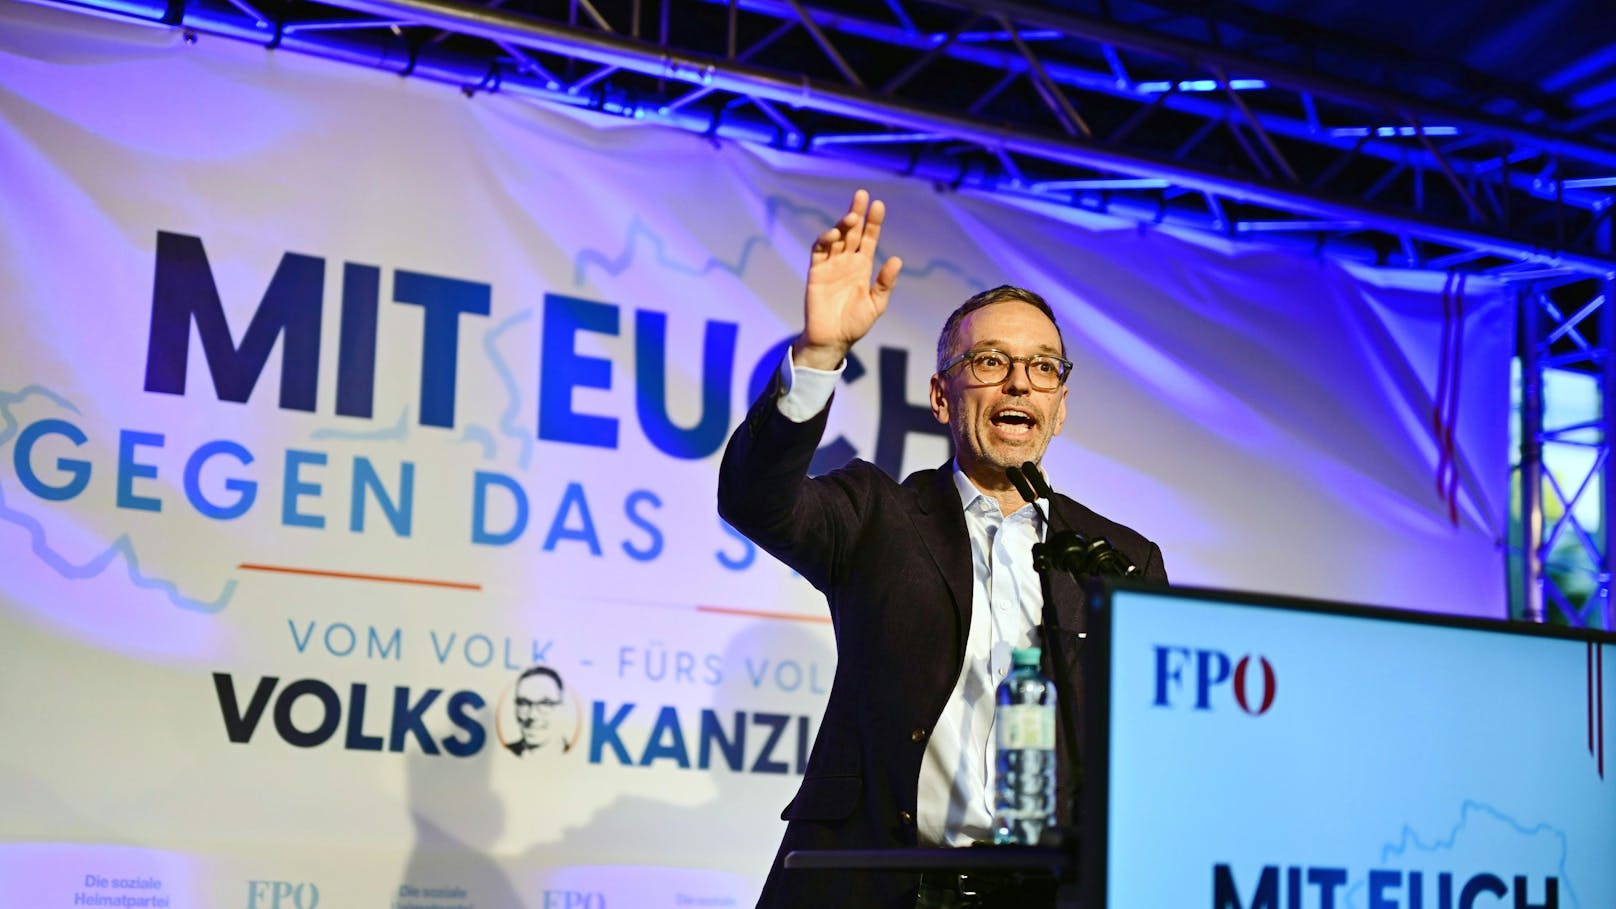 Für Wahlsieg bekommt FPÖ mehrere Millionen Euro